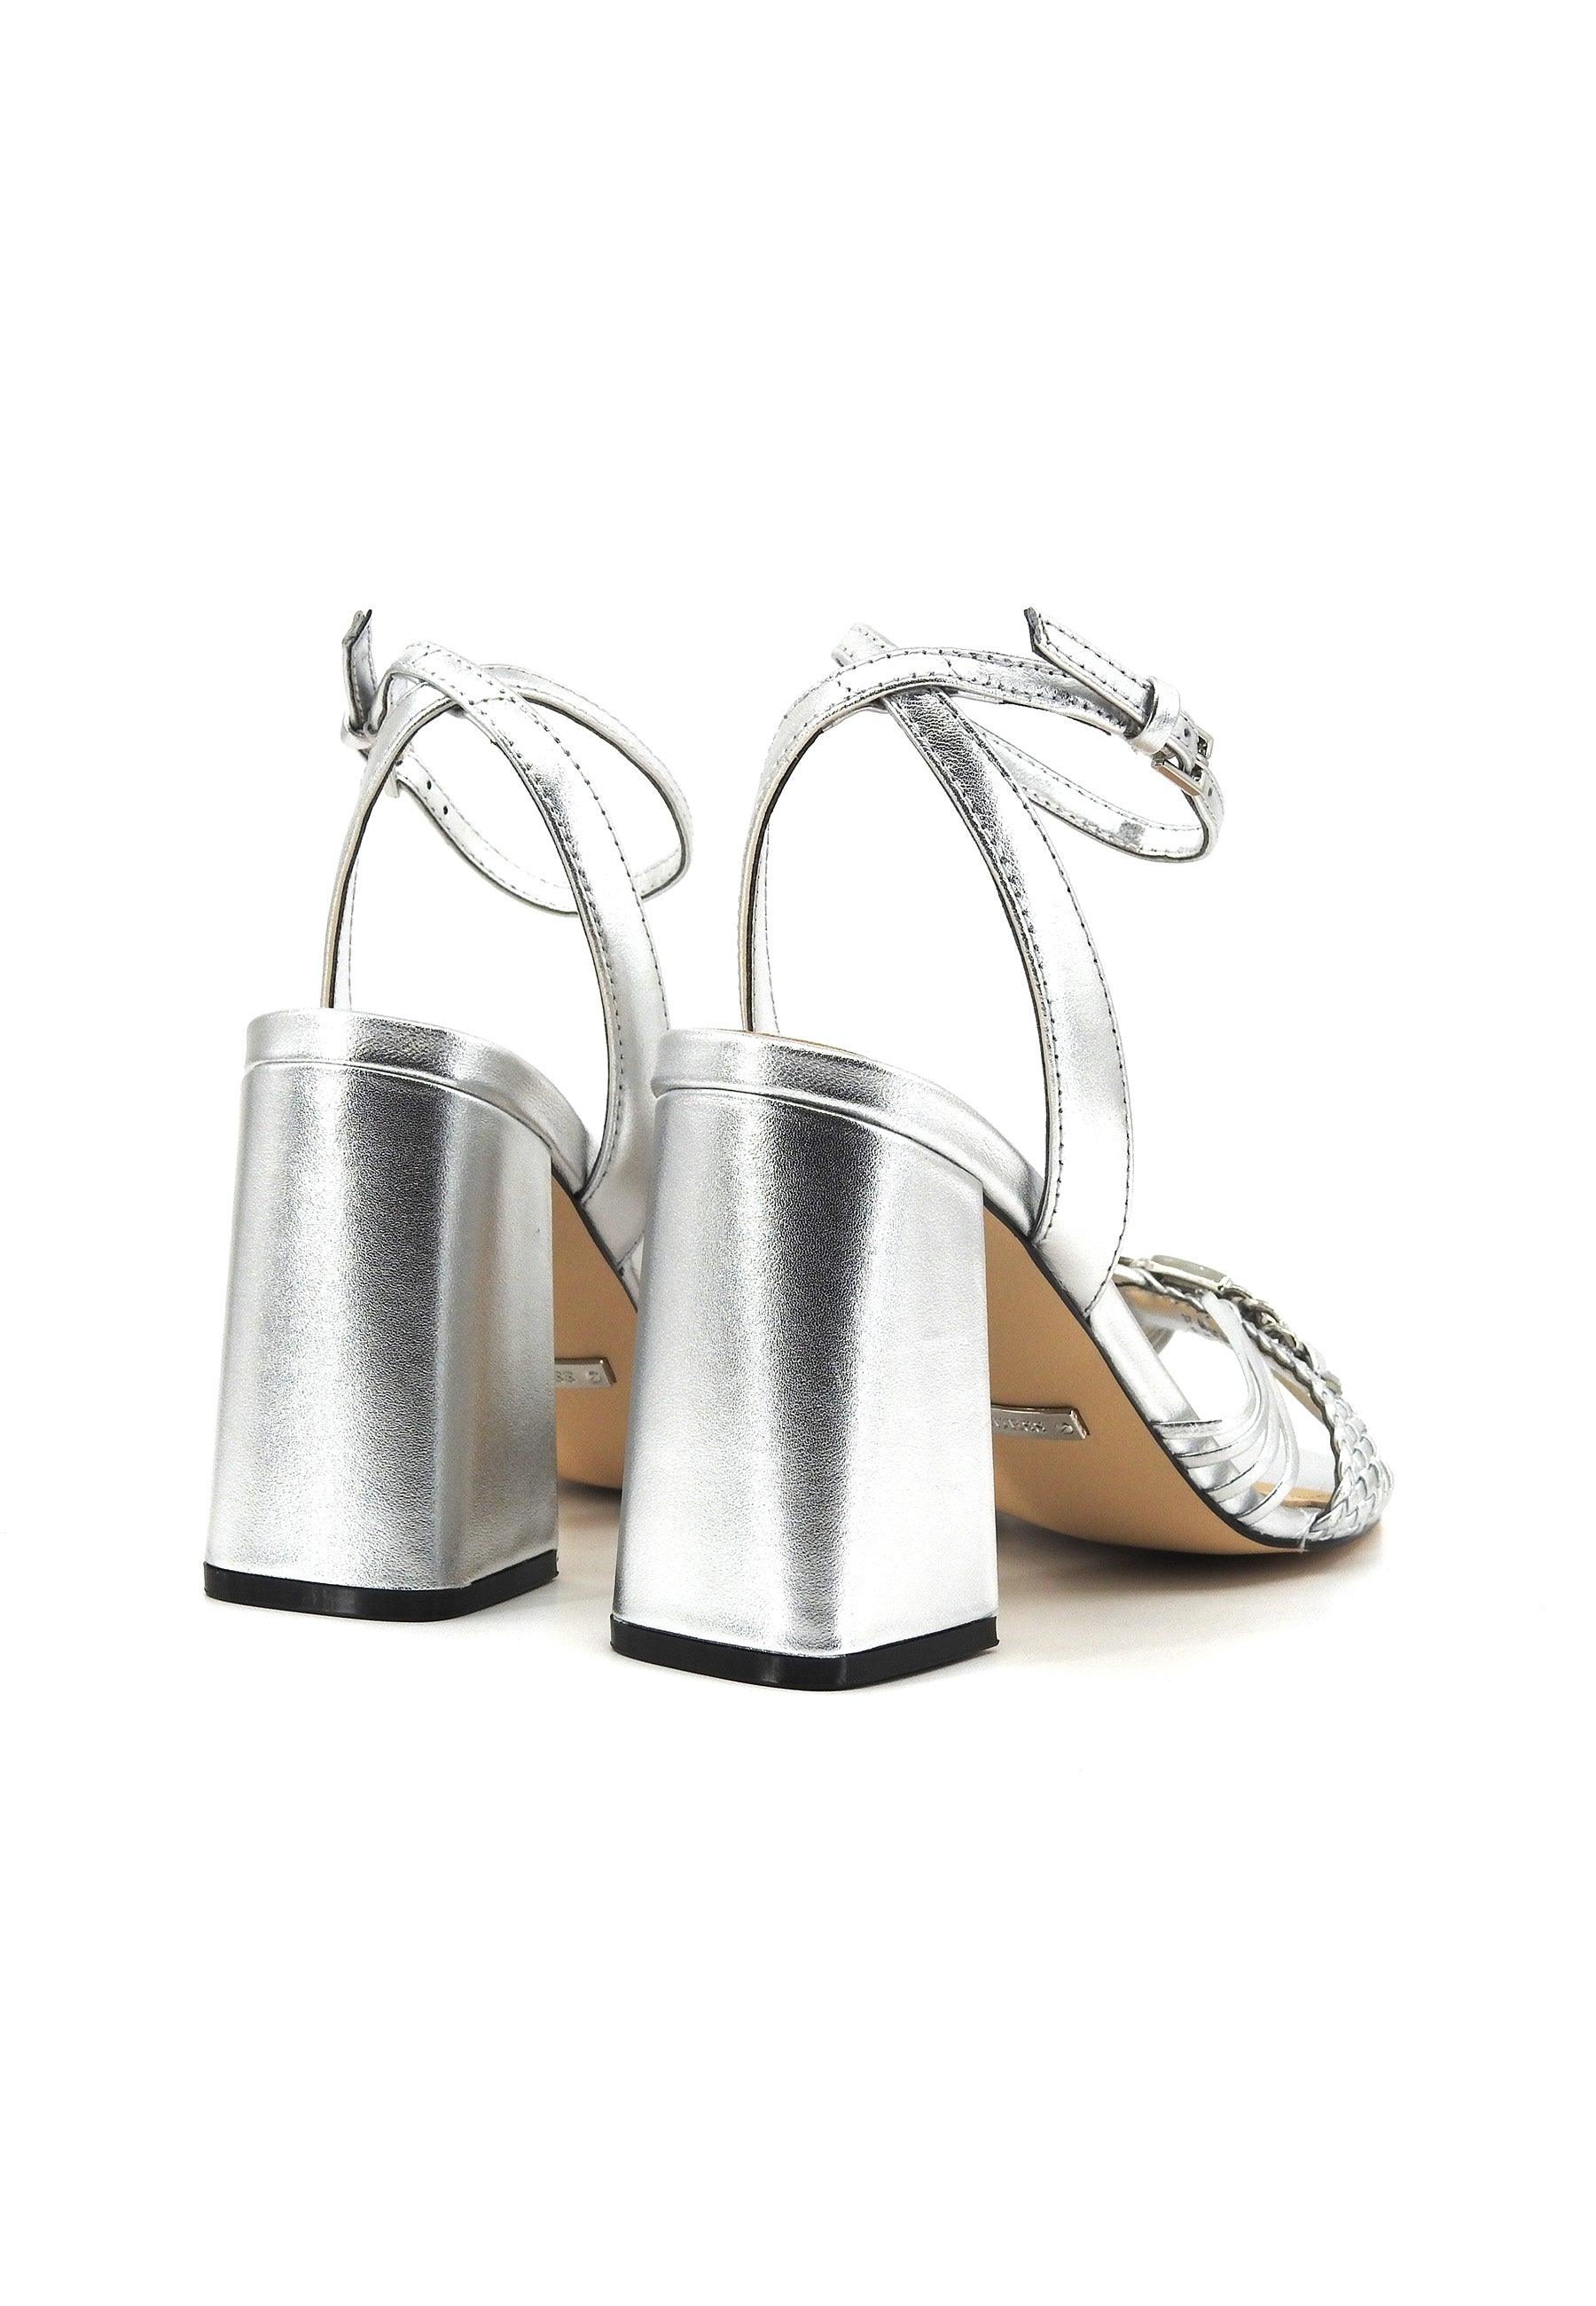 GUESS Sandalo Tacco Donna Silver FLJKENLEM03 - Sandrini Calzature e Abbigliamento